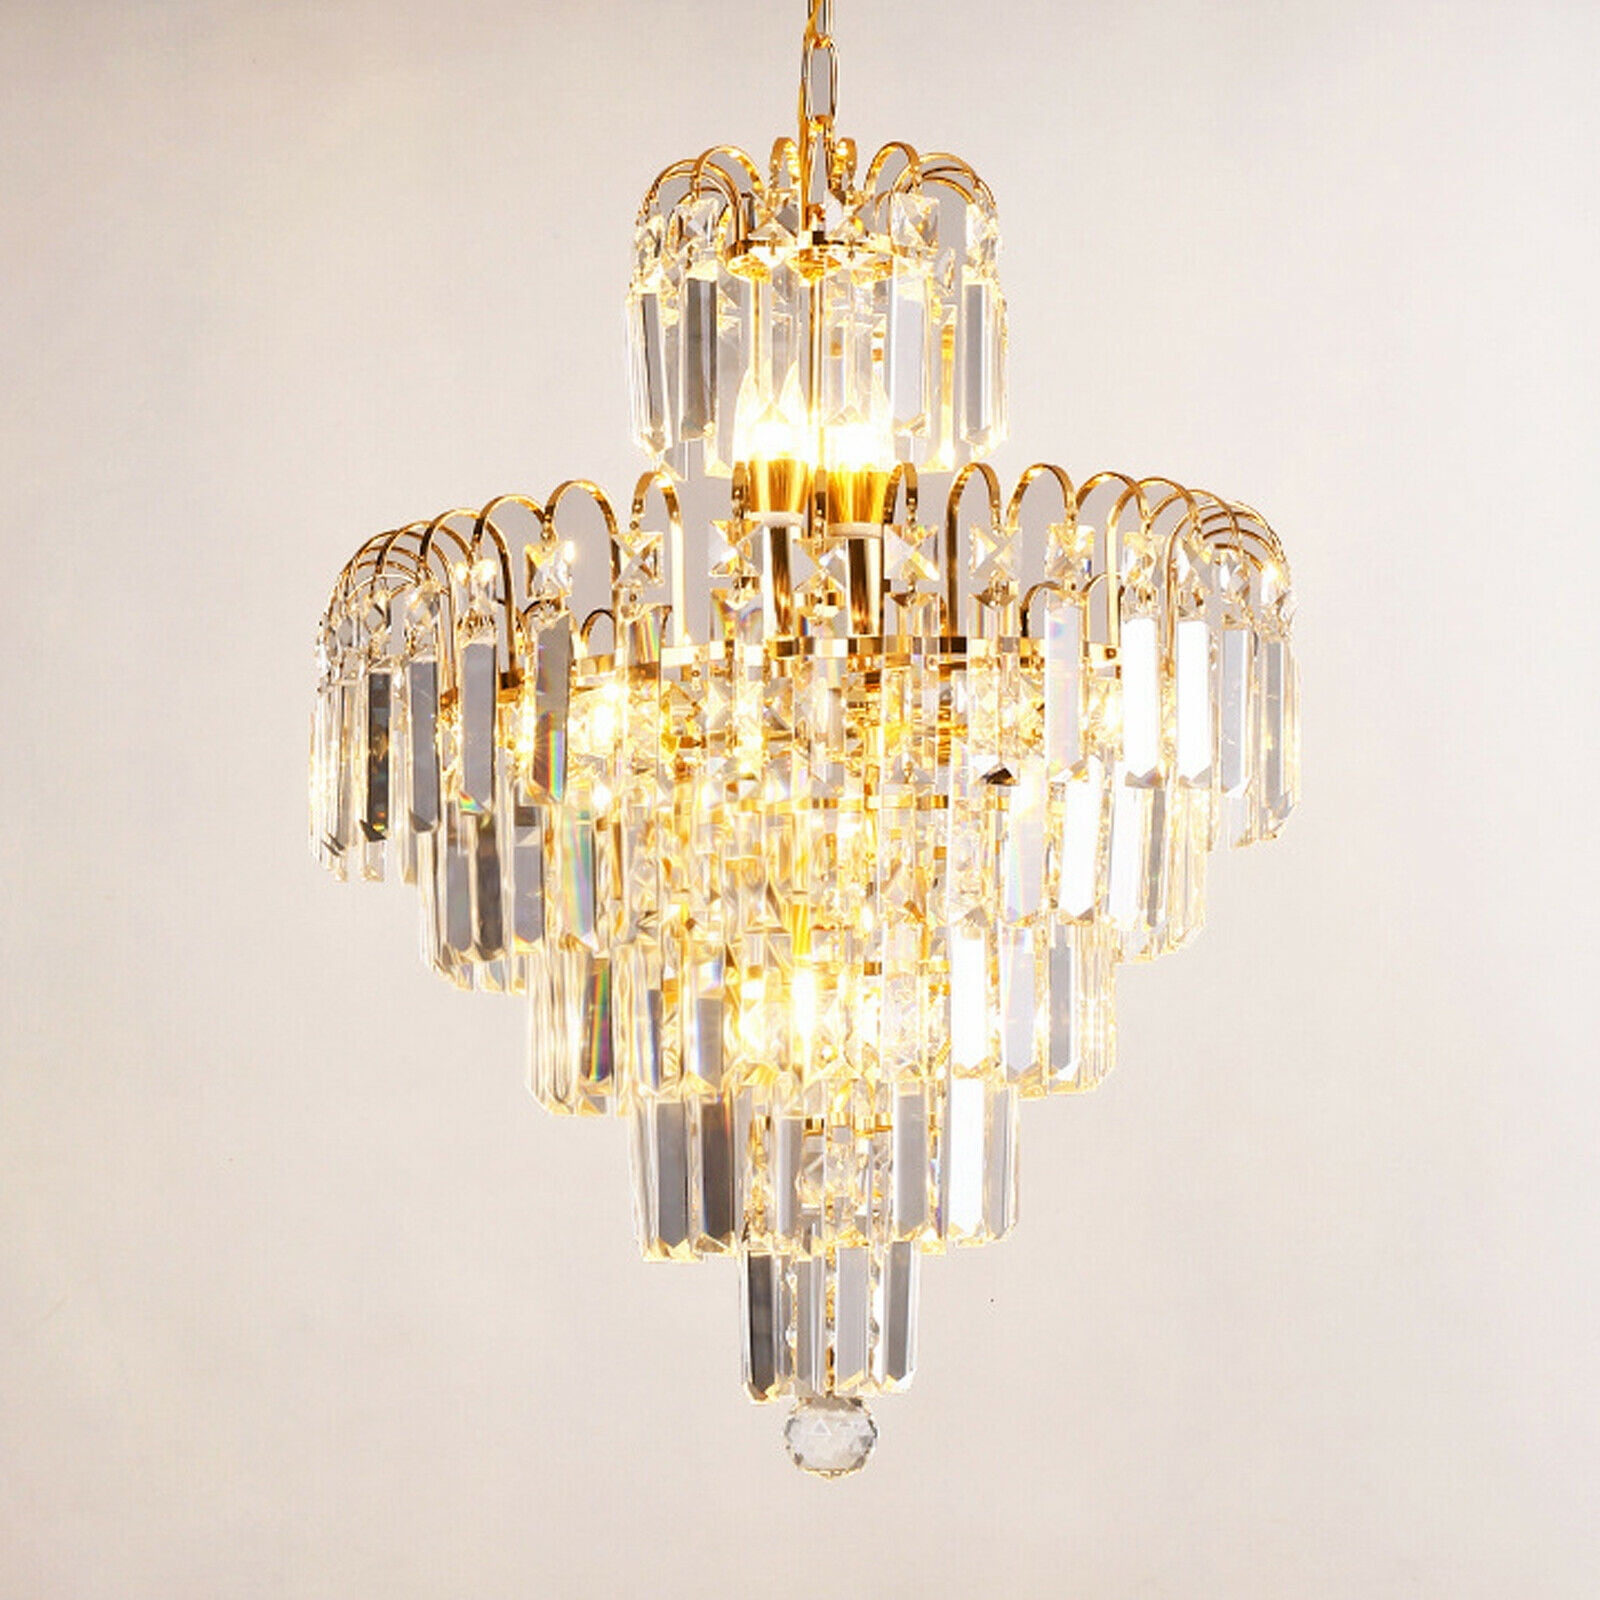 Modern K9 Crystal Ceiling Lamp Bedroom Chandelier Elegant Lighting Pendant Light 